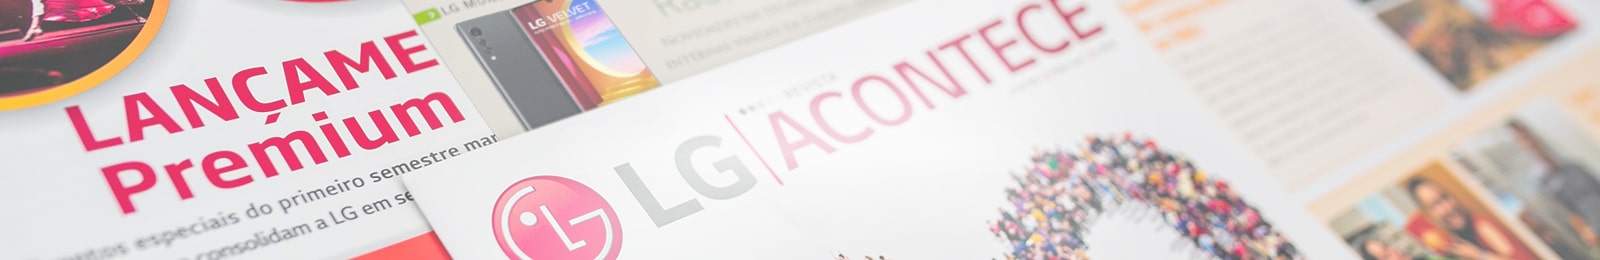 Conheça mais sobre LG Electronics, últimas notícias e anúncios